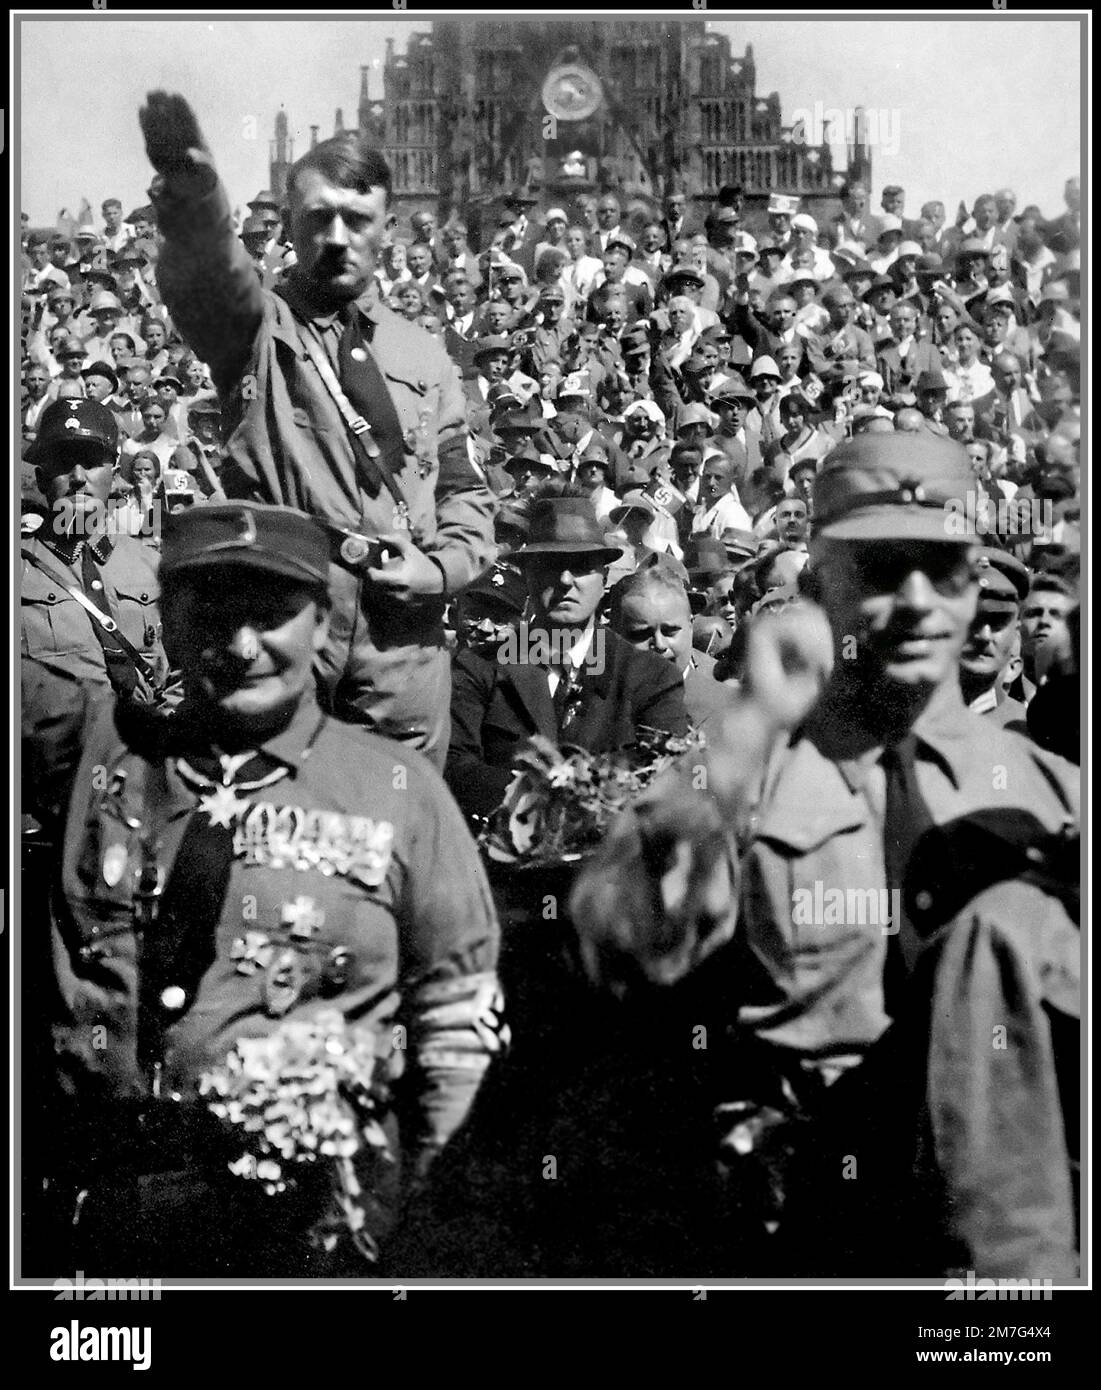 Adolf Hitler 1930s lors d'un rallye de Nuremberg en Allemagne nazie avec Hermann Goring en premier plan. Une poupe Adolf Hitler en uniforme de sa donnant un salut Heil Hitler Banque D'Images